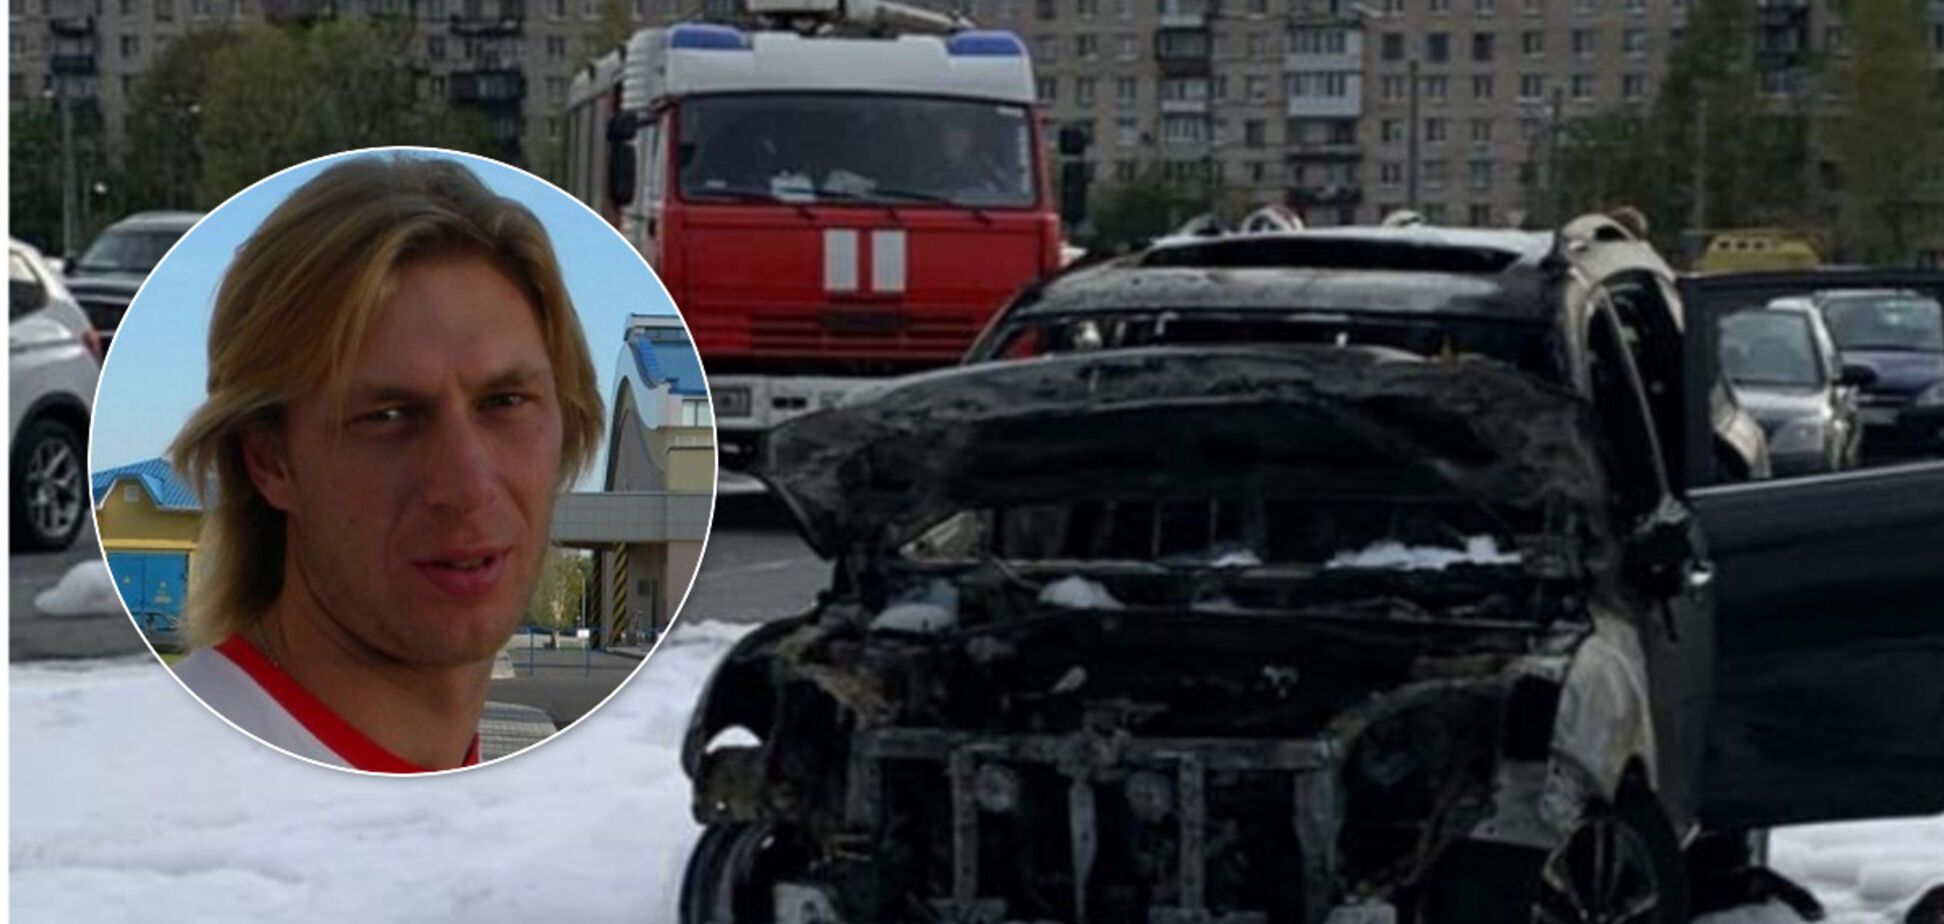 Віцечемпіон Європи Денис Маркелов врятував в Росії дітей з палаючої машини - відеофакт